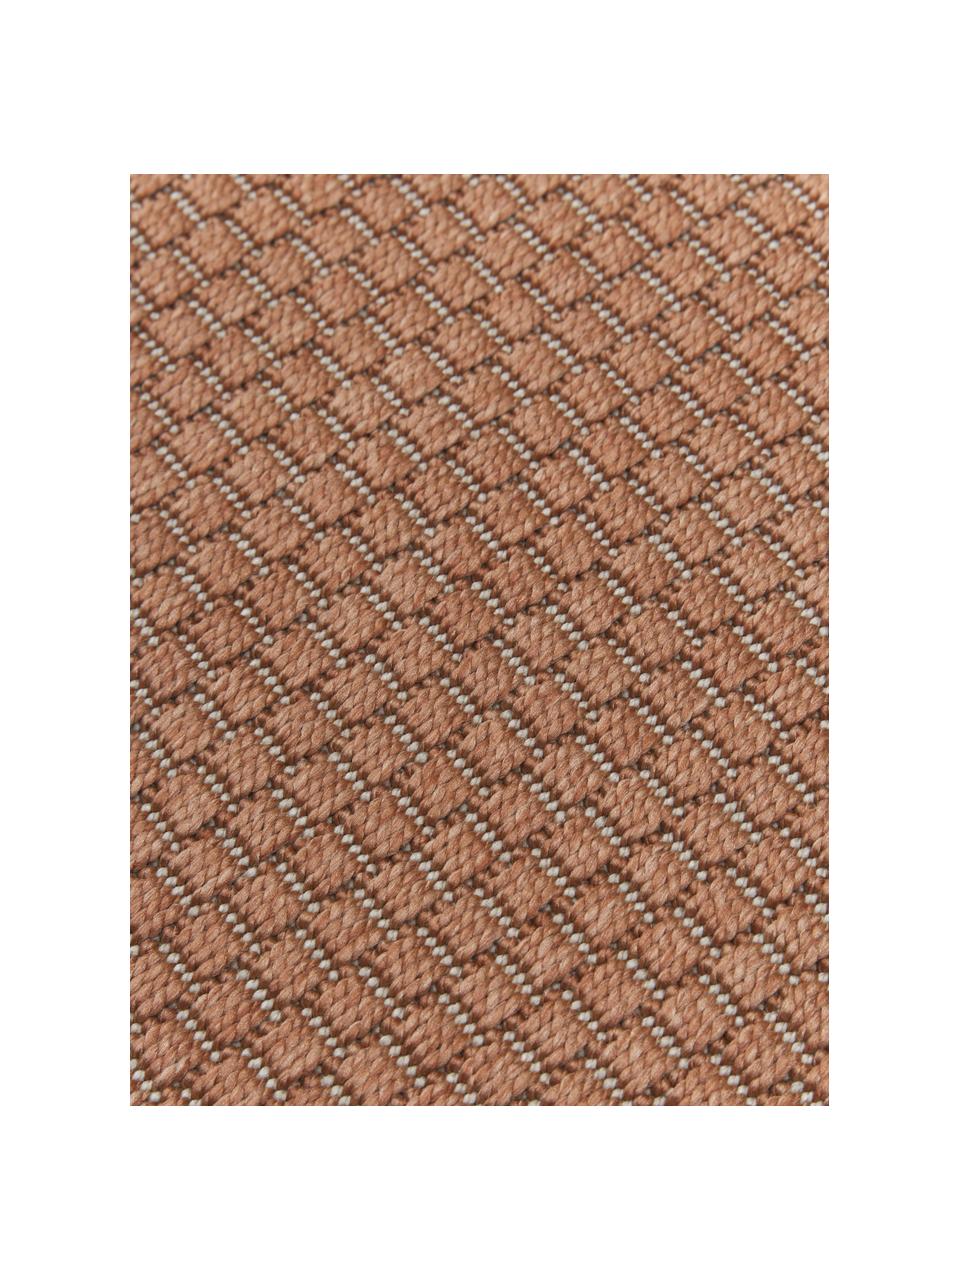 Ovaler In- & Outdoor-Teppich Toronto in Terrakotta, 100% Polypropylen, Terrakotta, B 200 x L 300 cm (Größe L)